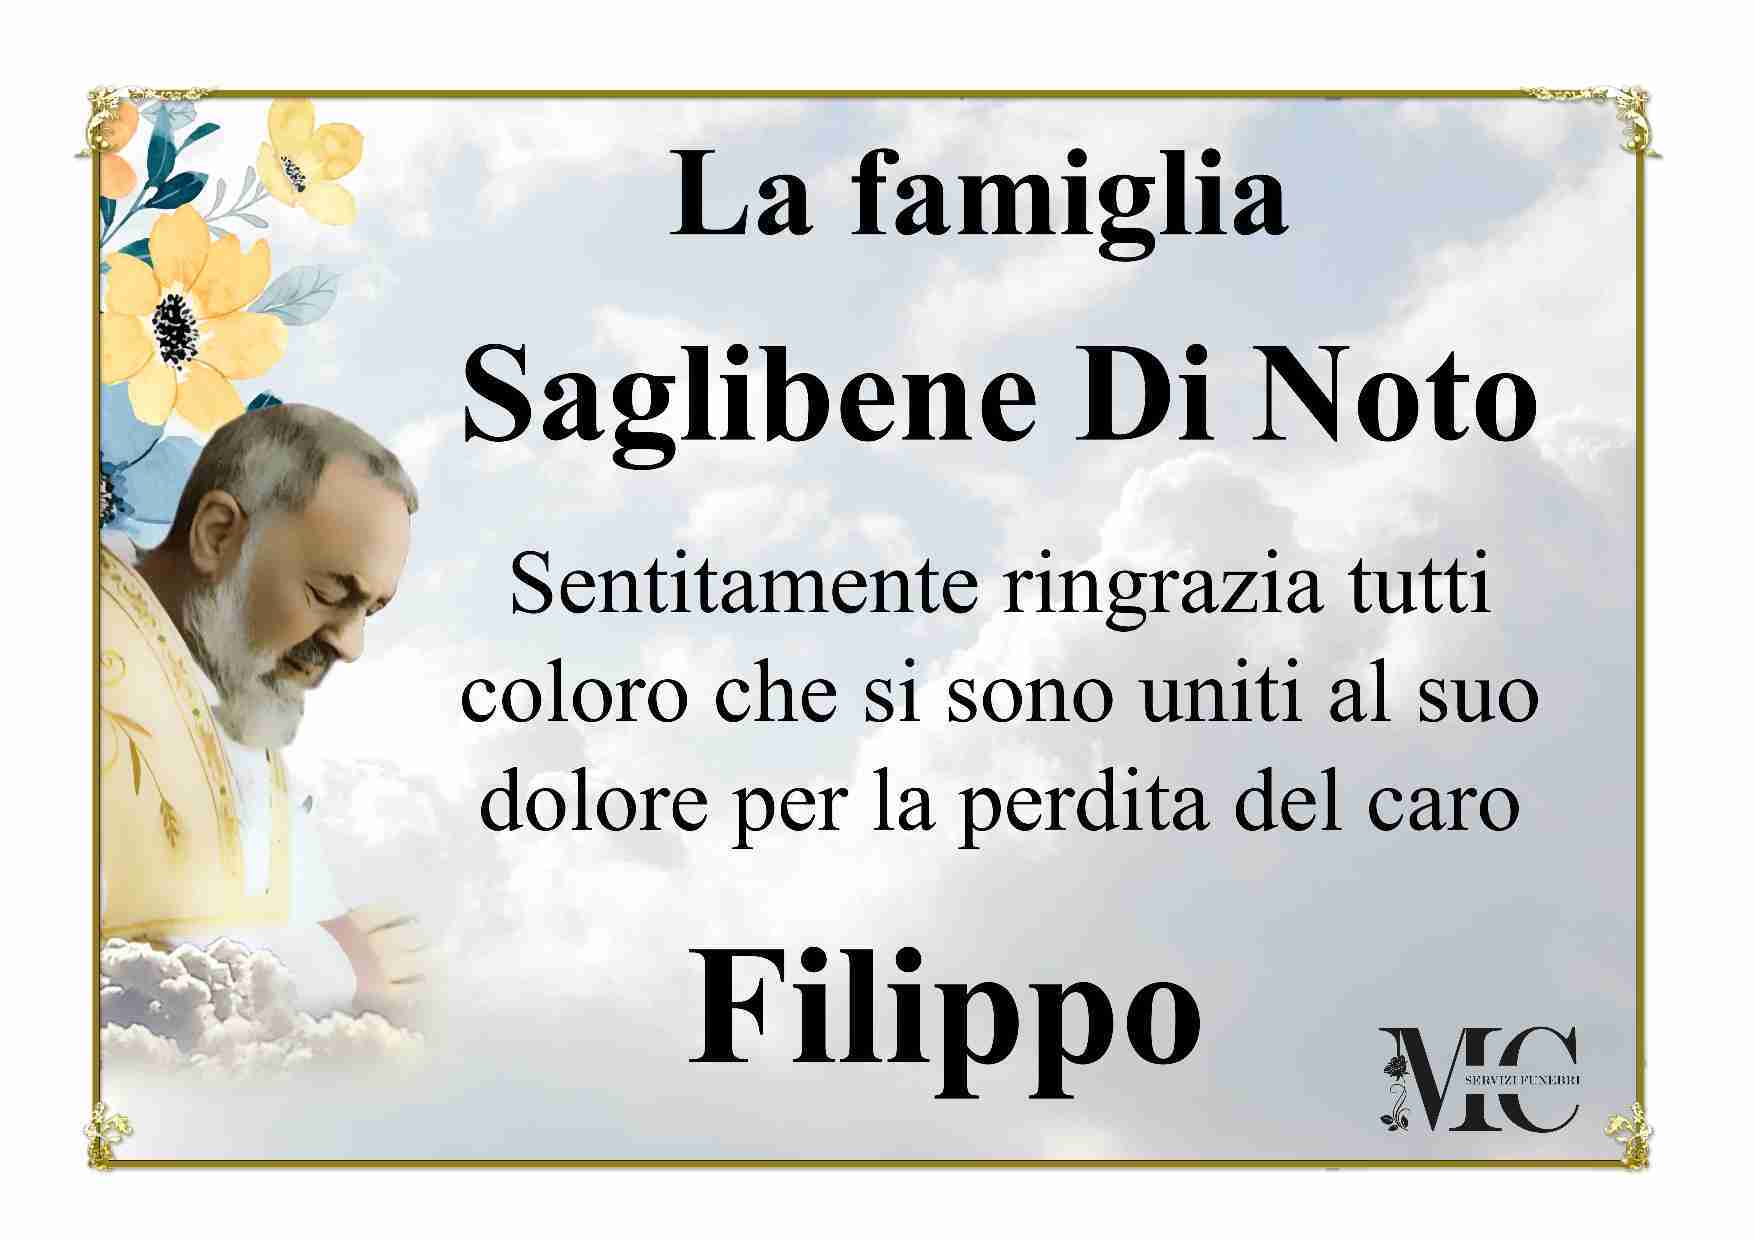 Filippo Saglibene Di Noto